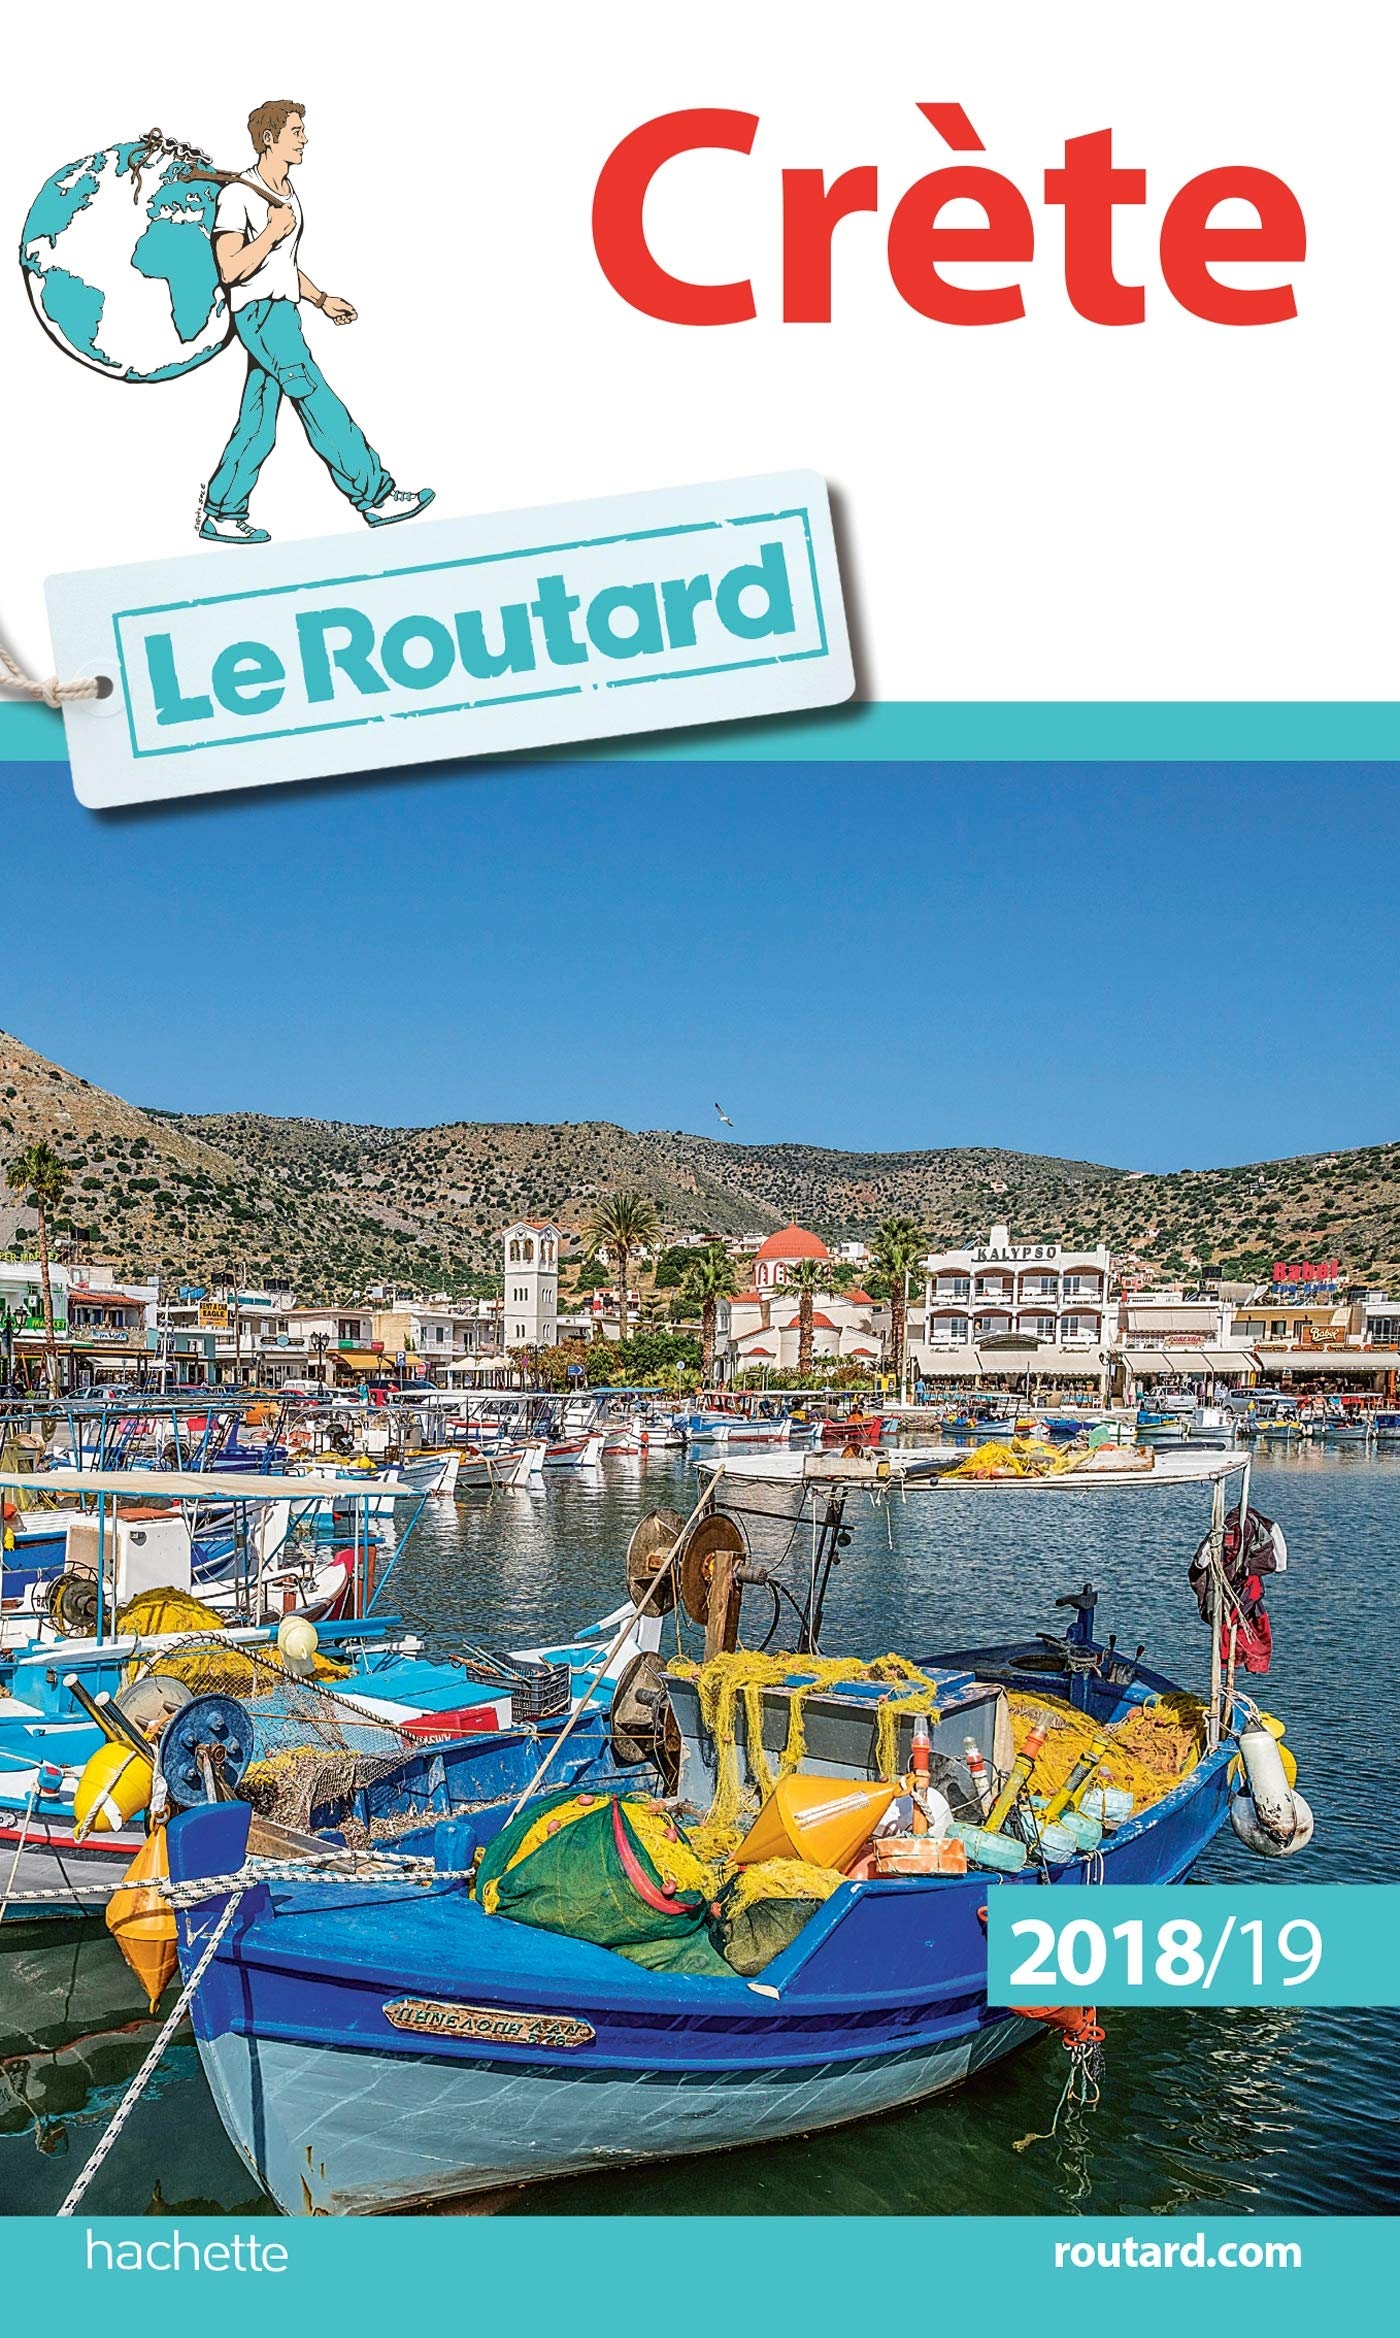 Εκδόσεις Hachette - Guide du Routard Crète 2018/19 - Le Routard